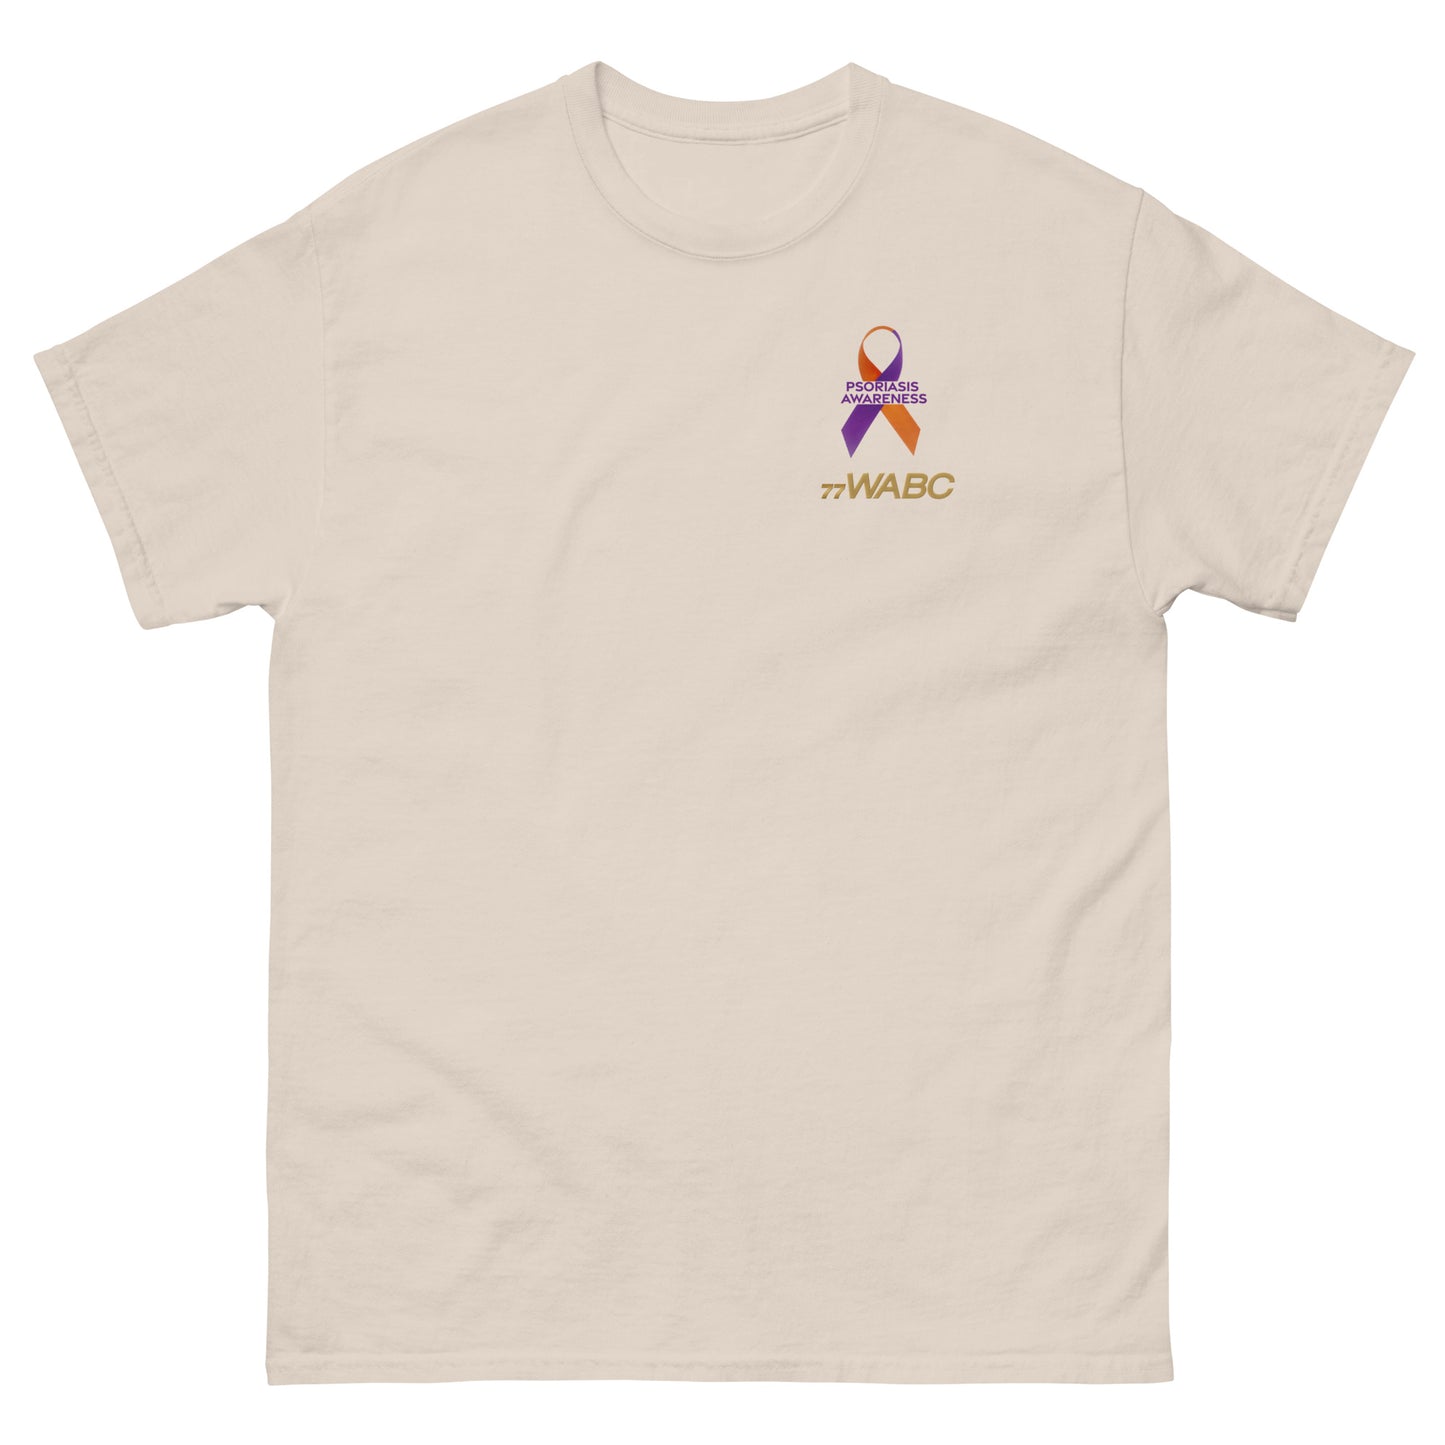 PSORIASIS Awareness - WABC Radio Foundation T-Shirt